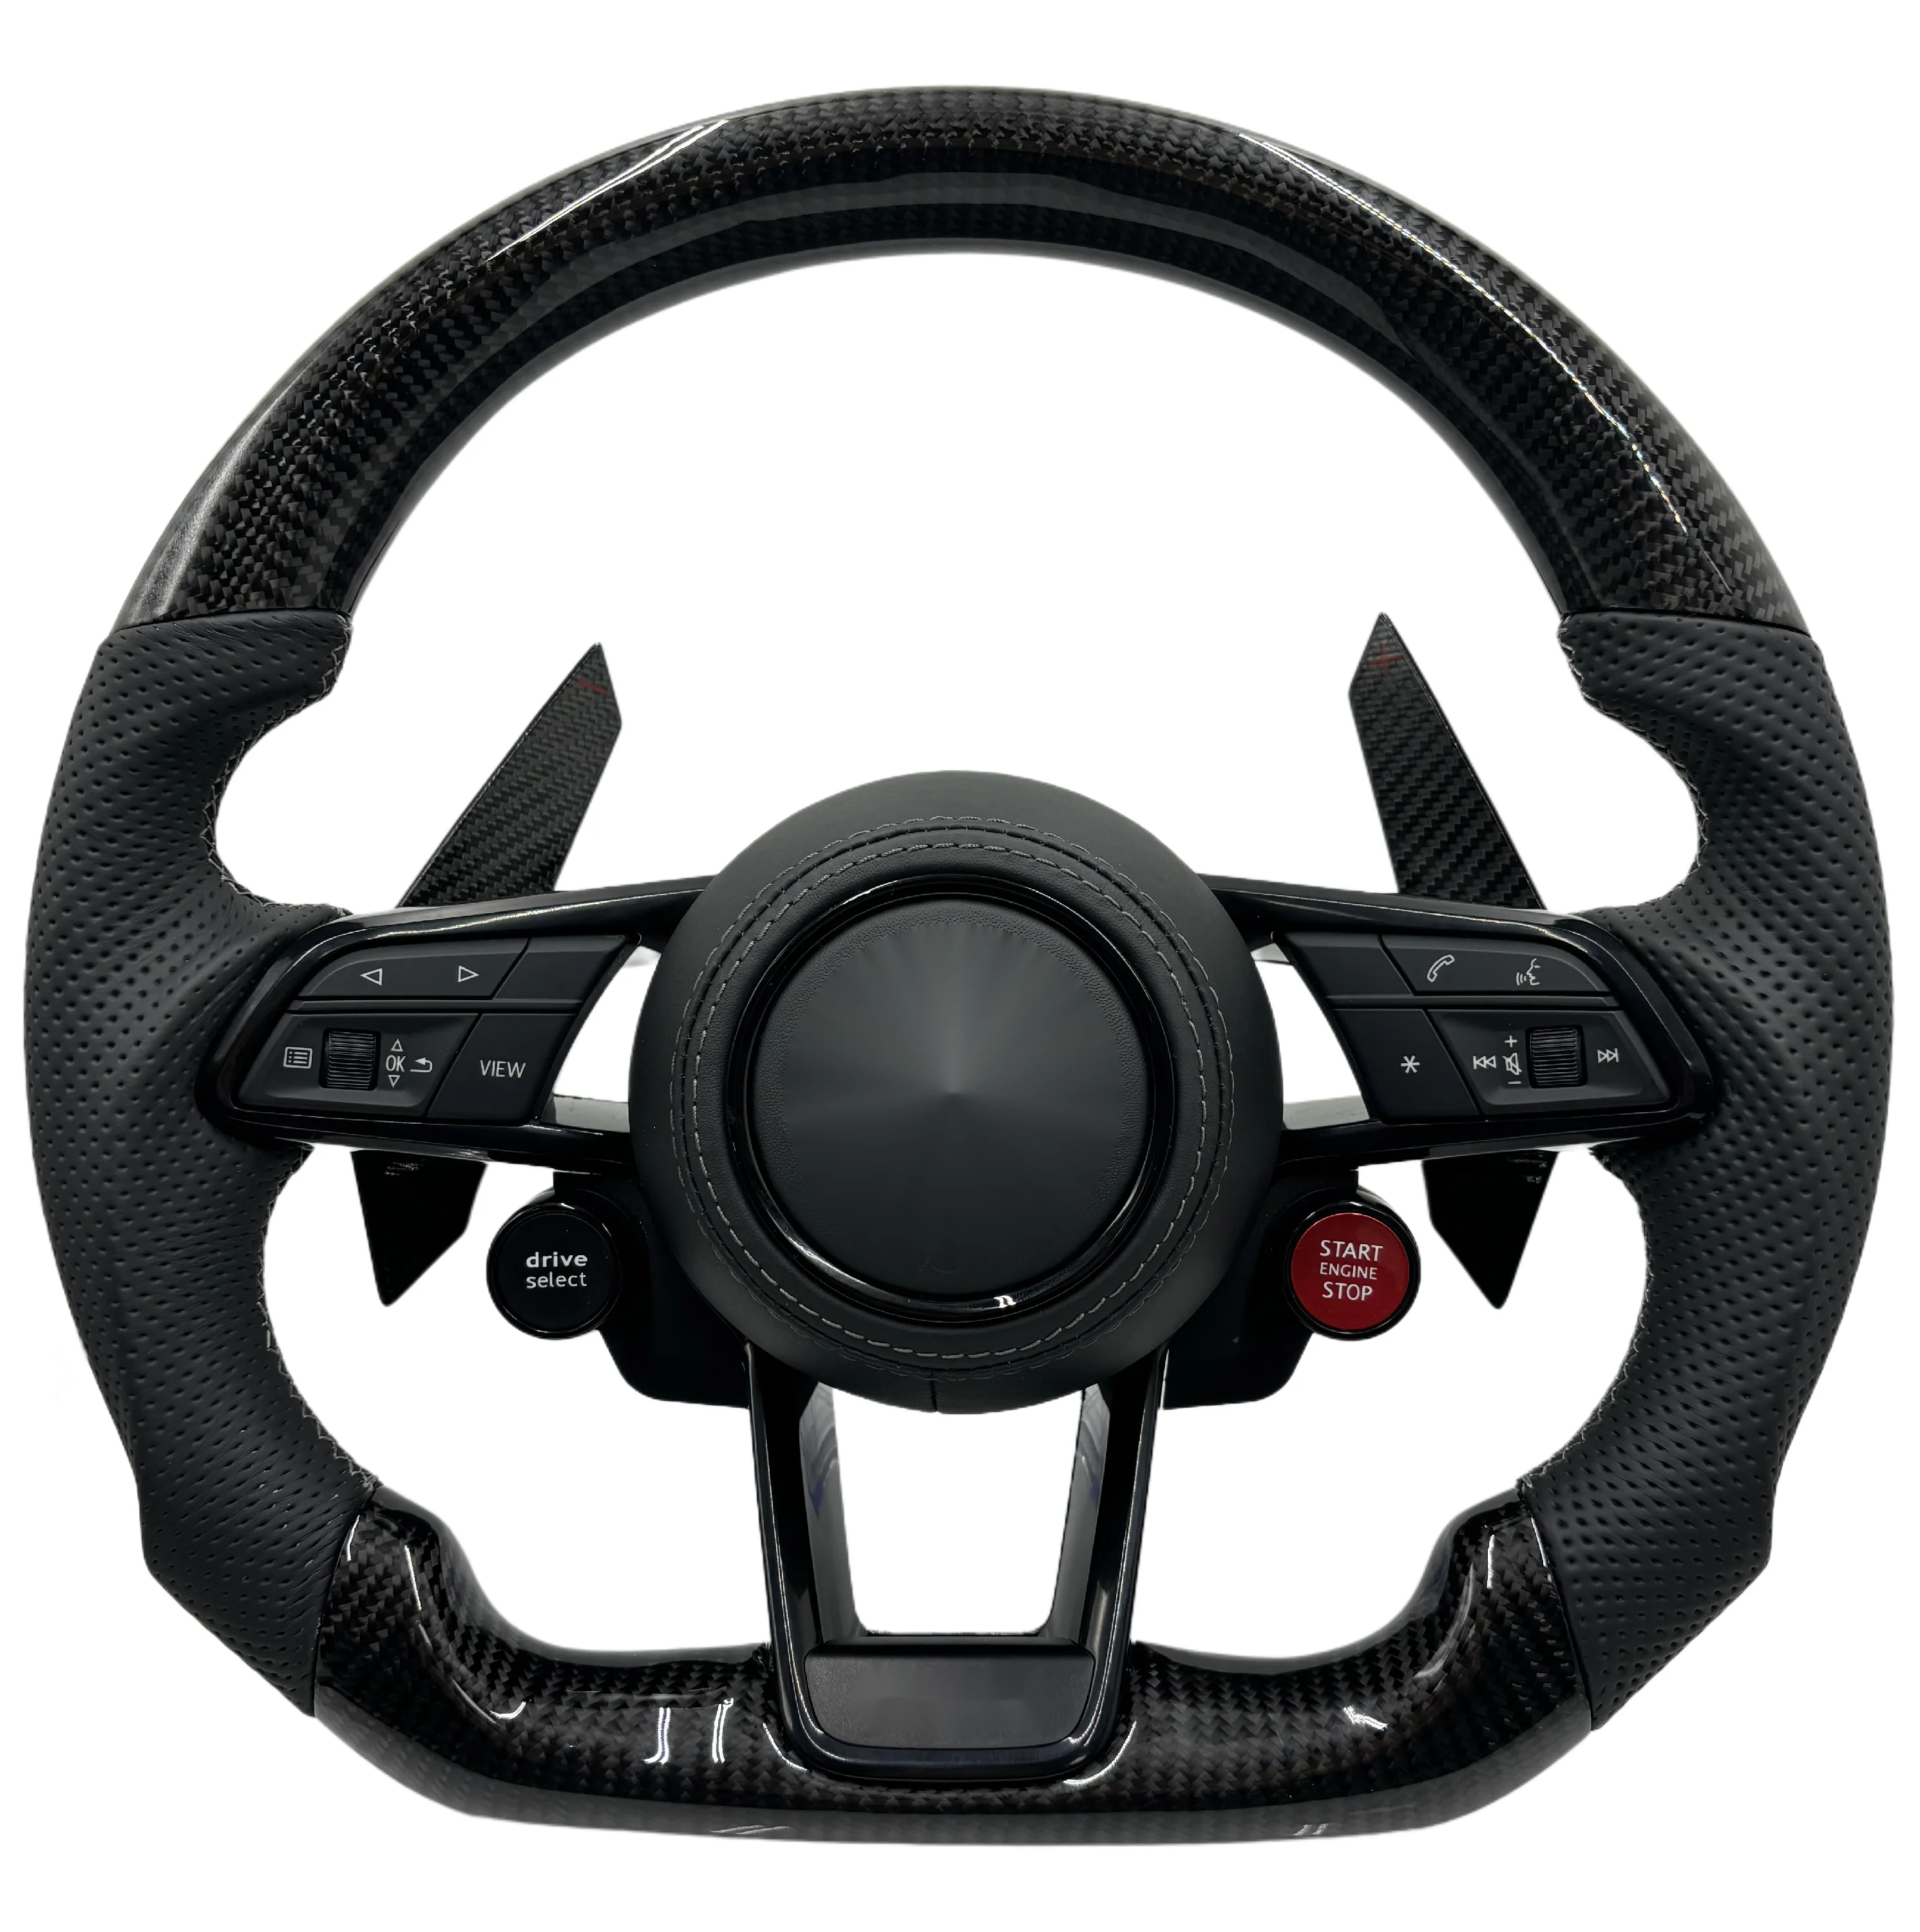 

RS Steering wheel for Audi A3 A4 A5 A6 A7 A8 S3 S4 S5 S6 S7 S8 Q3 Q5 Q7 Q8 SQ5 SQ7 SQ8 RSQ5 RSQ7 RSQ8 RS3 RS4 RS5 RS6 RS7 R8